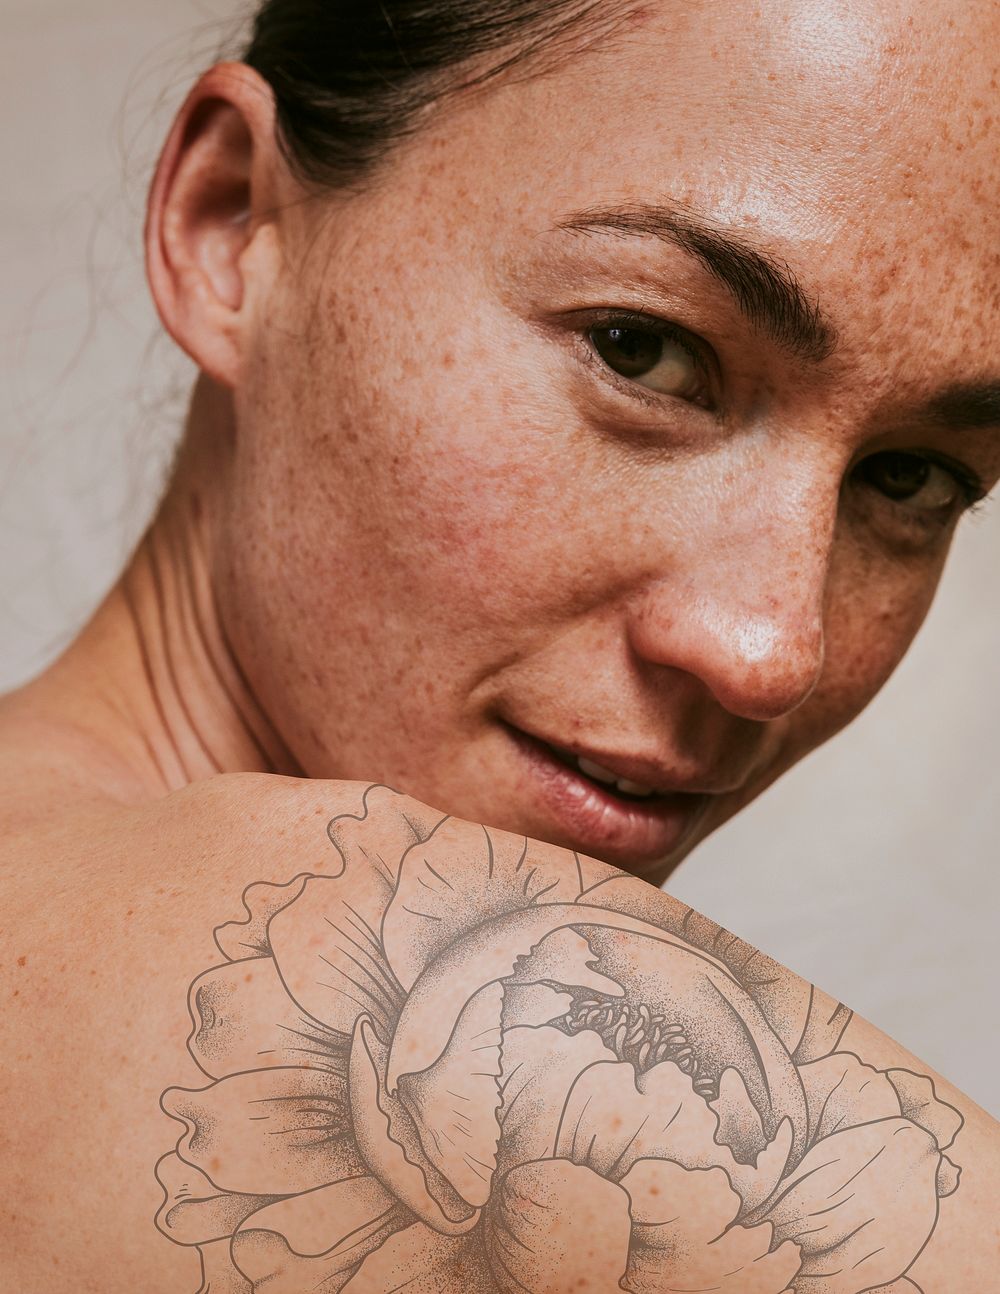 Flower tattoo mockup, woman's back  psd